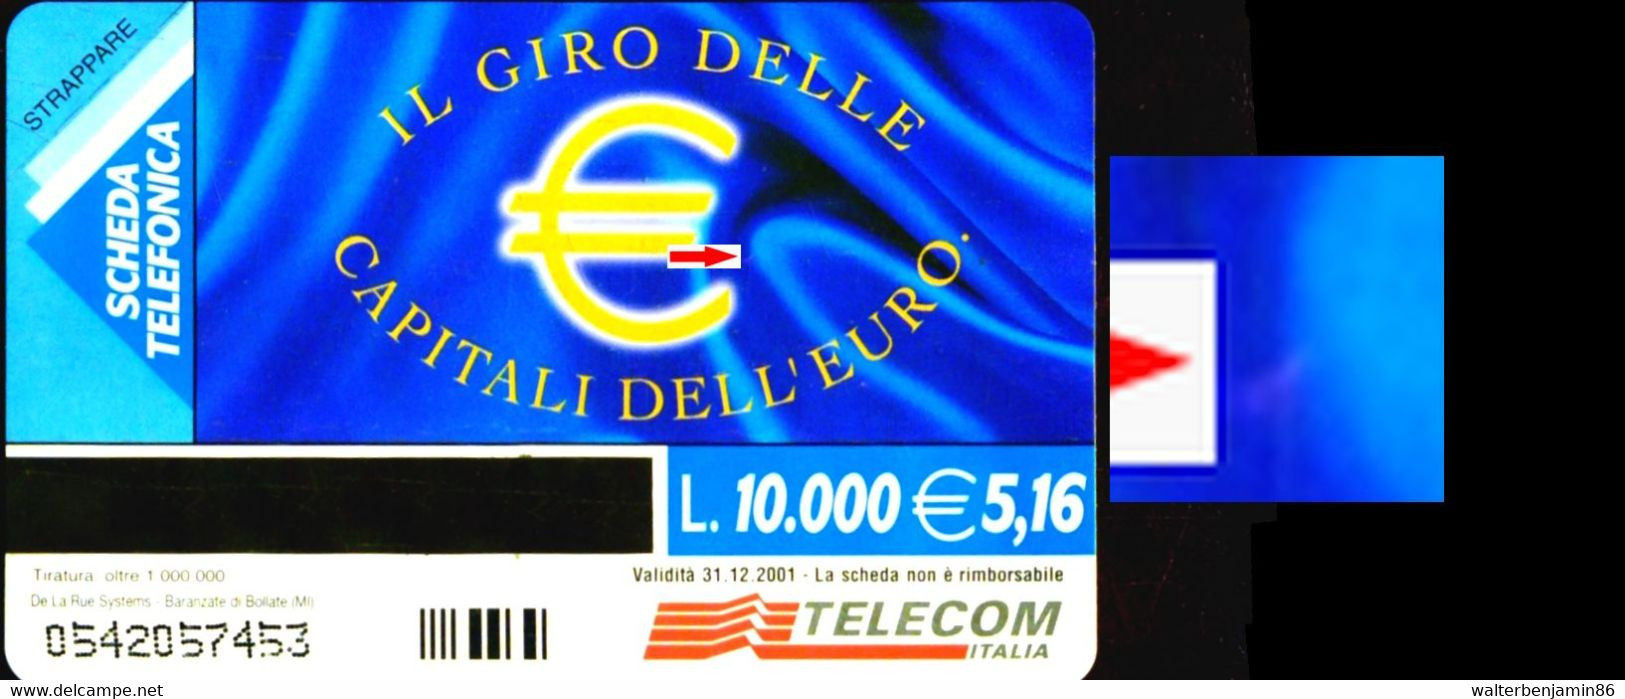 G 1091 C&C 3213 SCHEDA TELEFONICA NUOVA MAGNETIZZATA CAPITALI DELL' EURO MADRID VARIANTE SEGNO ROSSO - Errori & Varietà